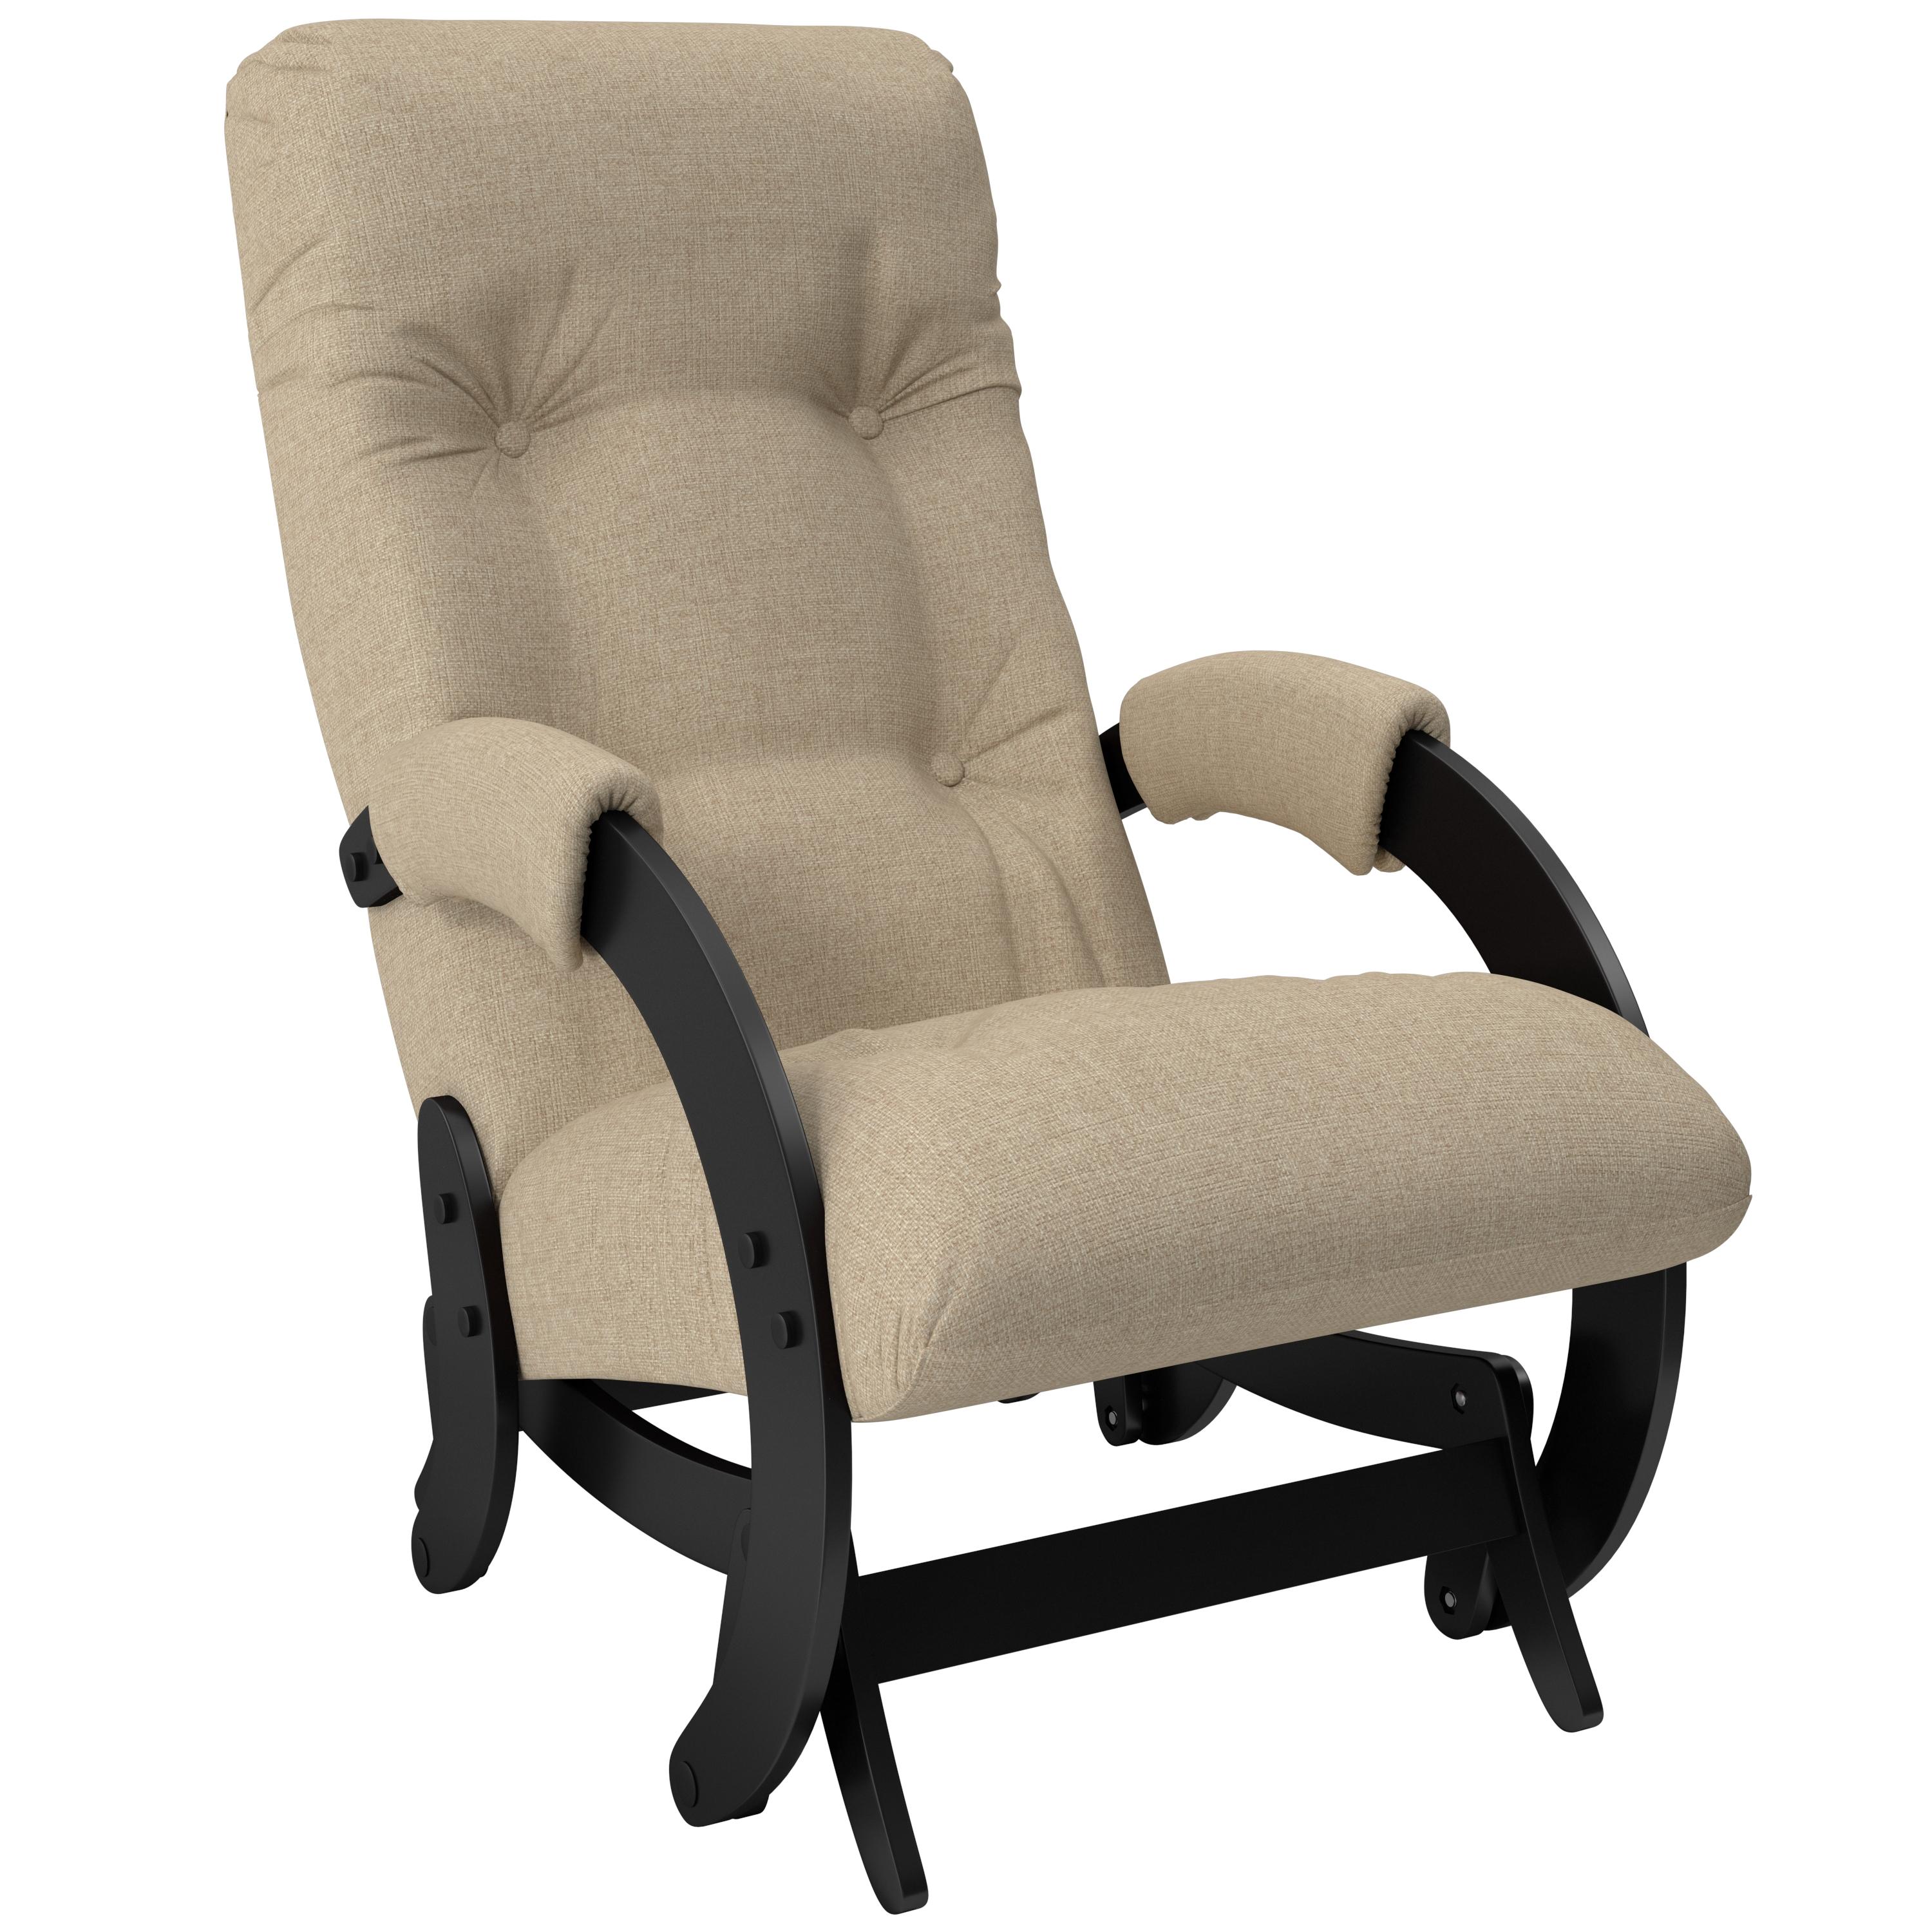 Кресло-глайдер Мебель Импэкс Модель 68 Венге/Ткань Malta 03 А